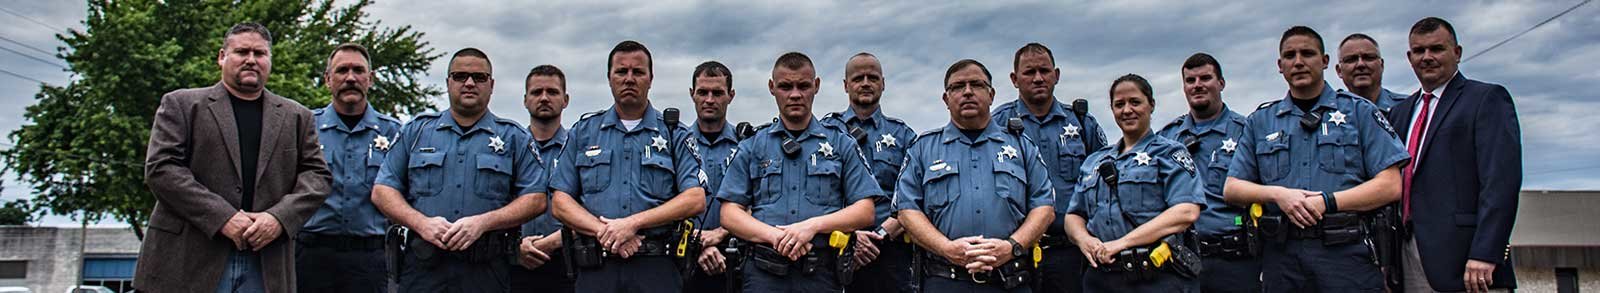 Deputies Standing together